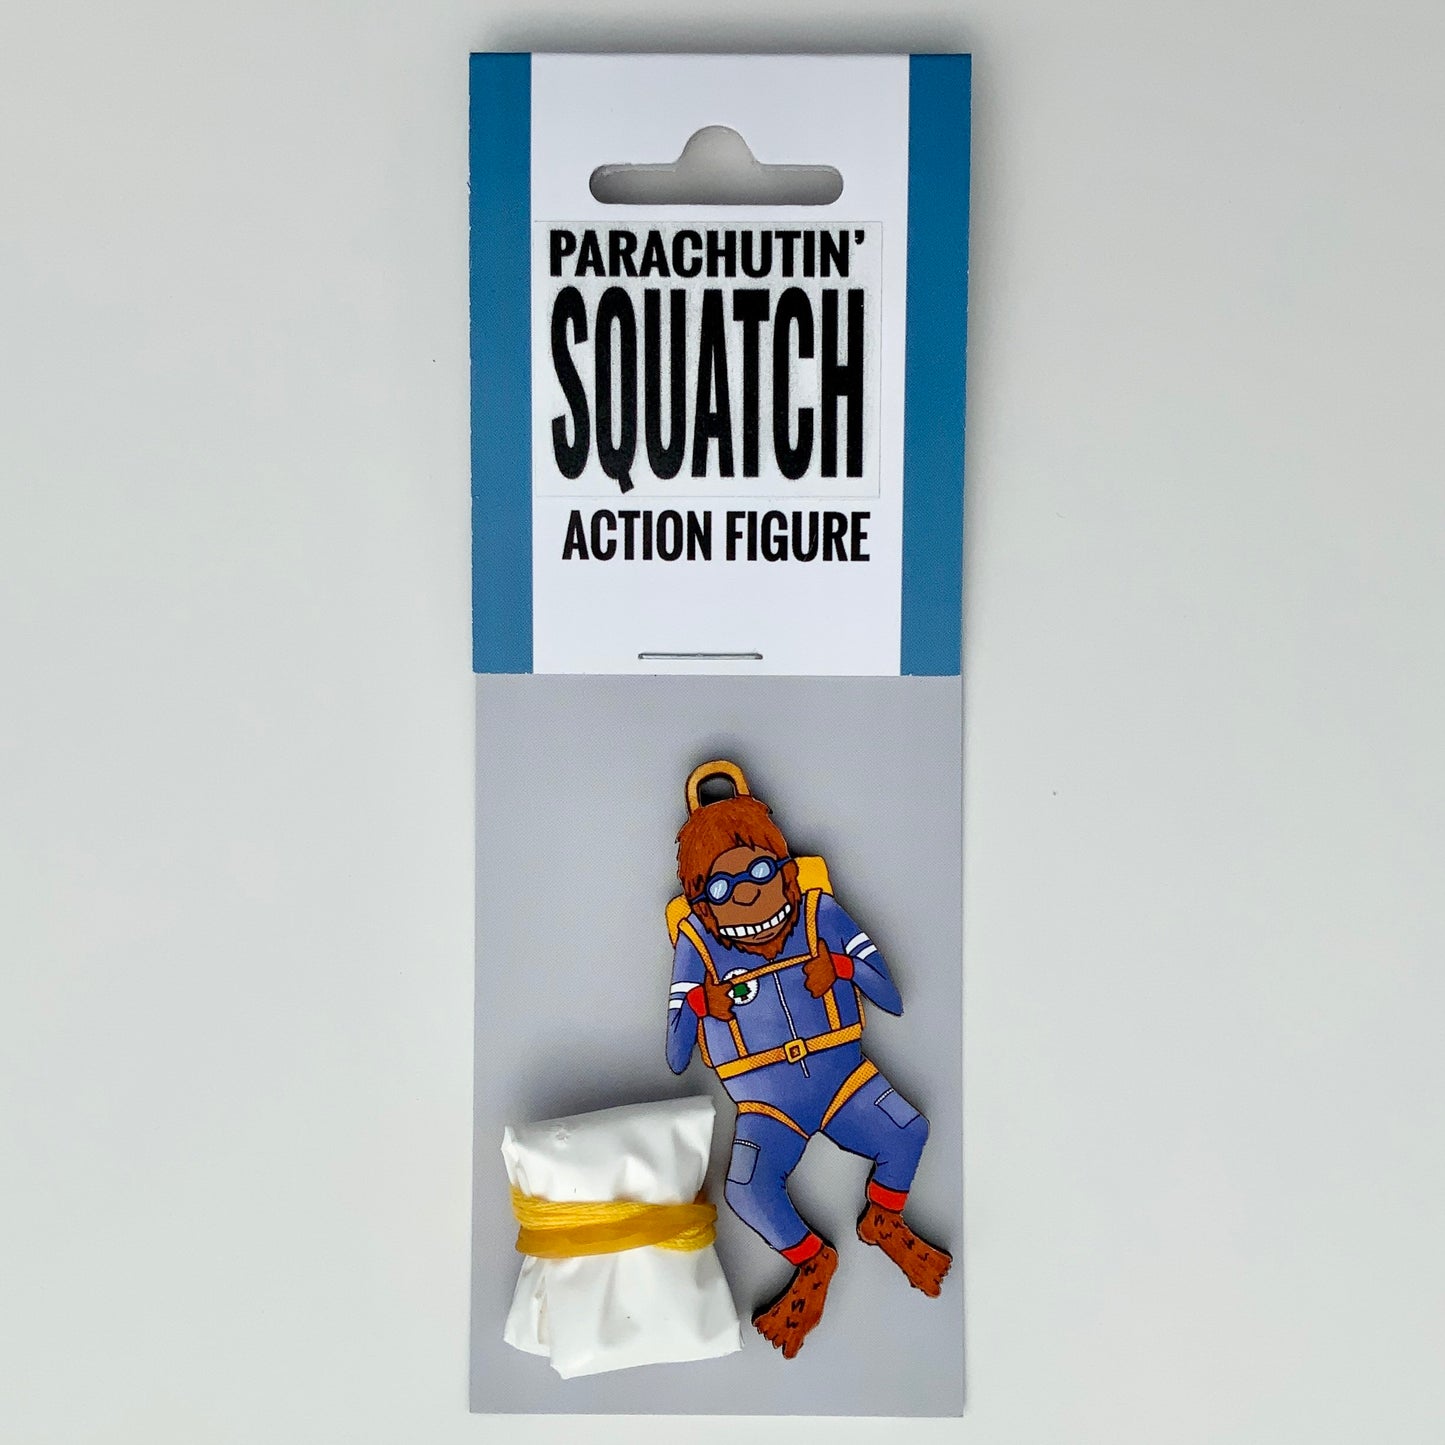 Action Figure - Parachutin' Squatch